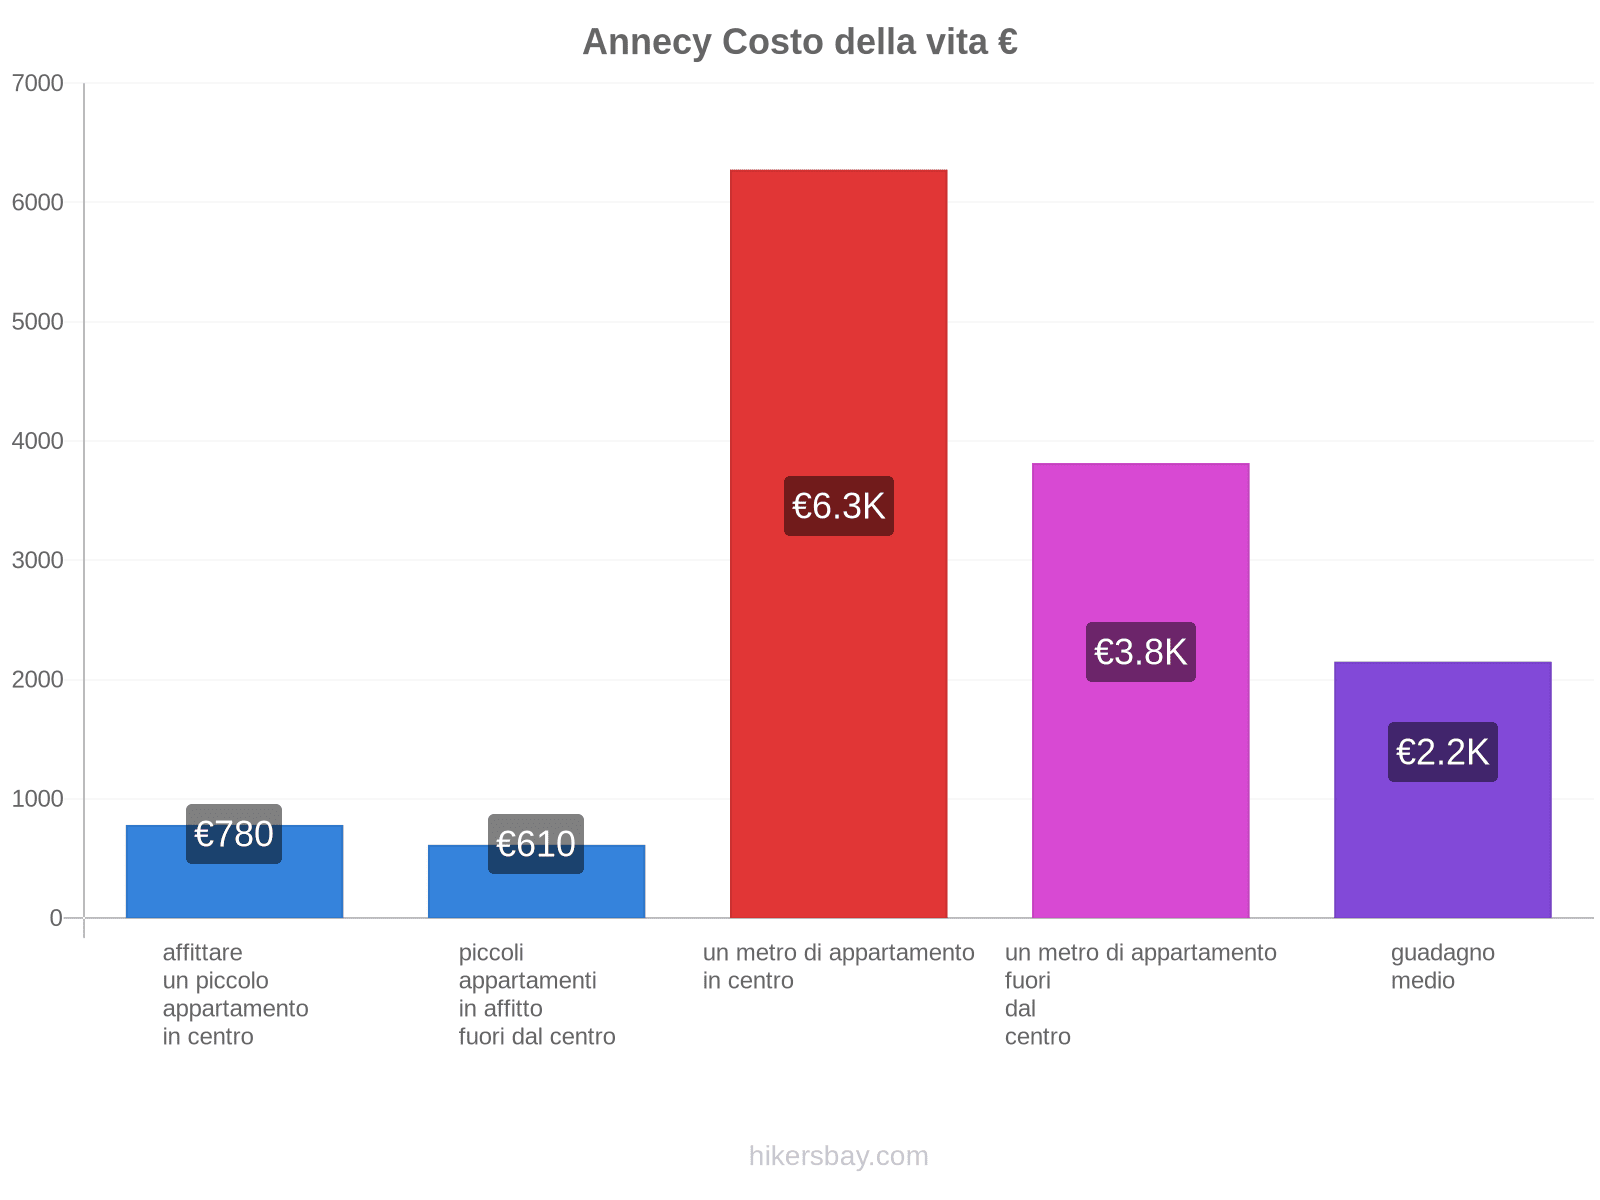 Annecy costo della vita hikersbay.com